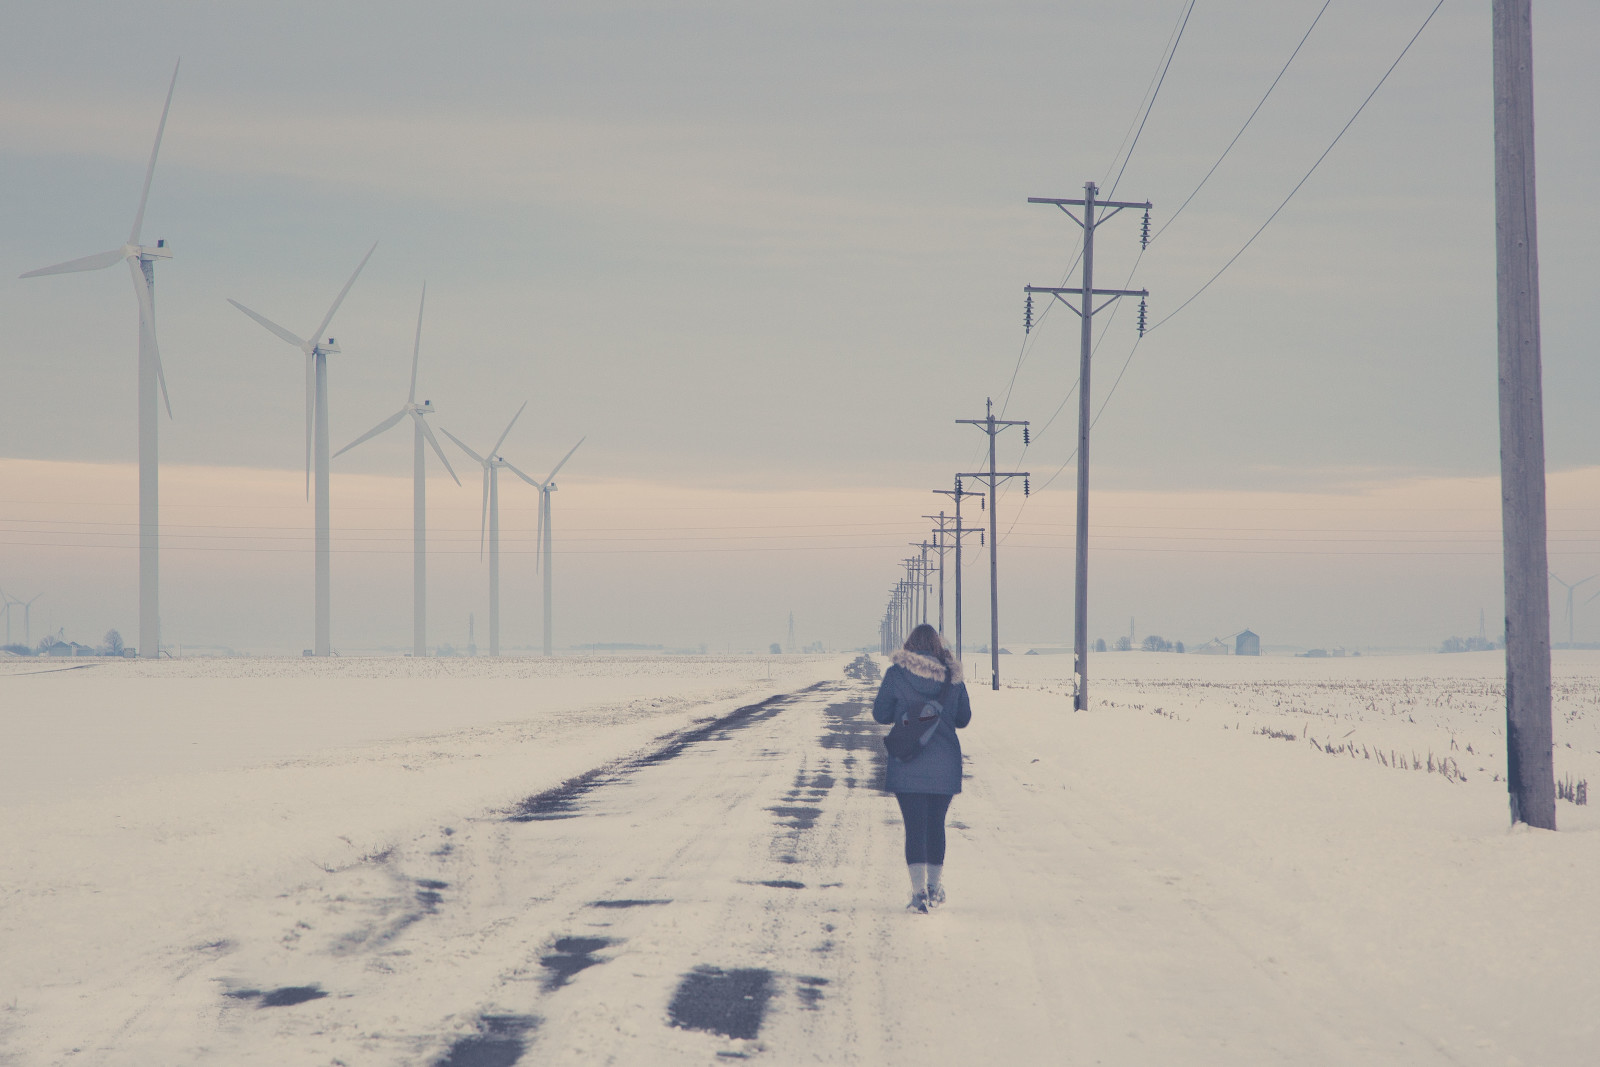 gadis, jalan, kembali, saluran listrik, berjalan, Turbin angin, salju musim dingin